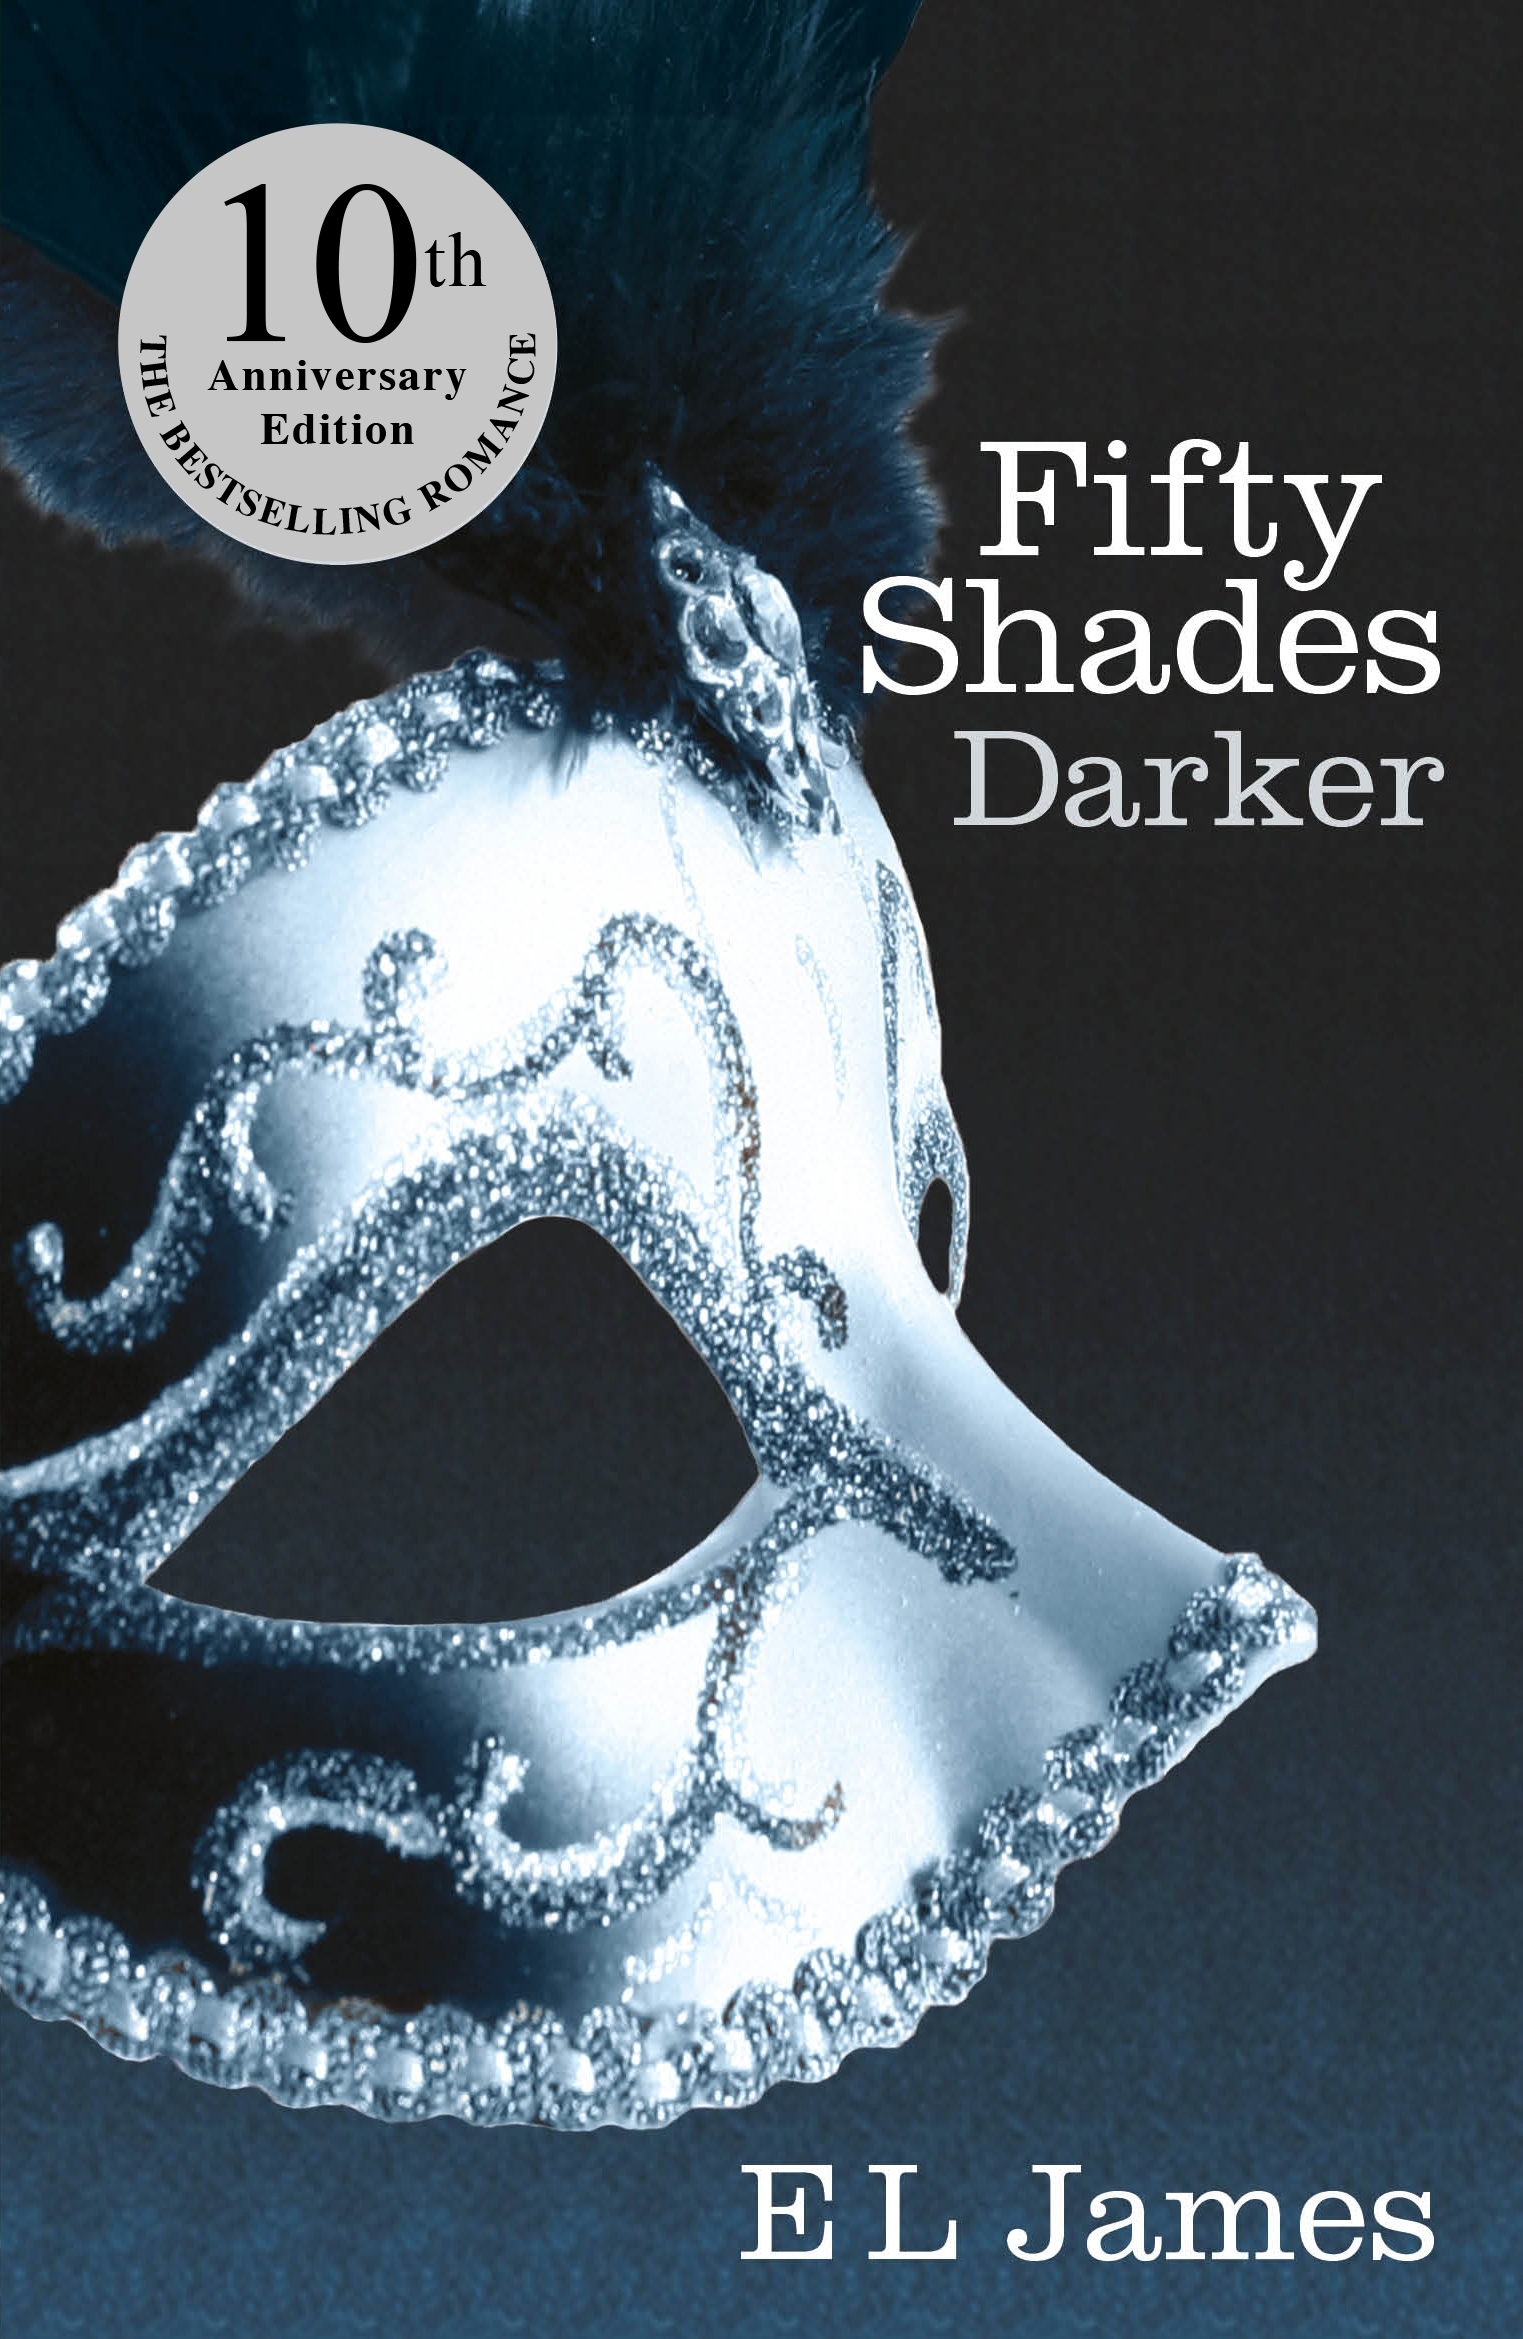 50 shades darker book free download pdf